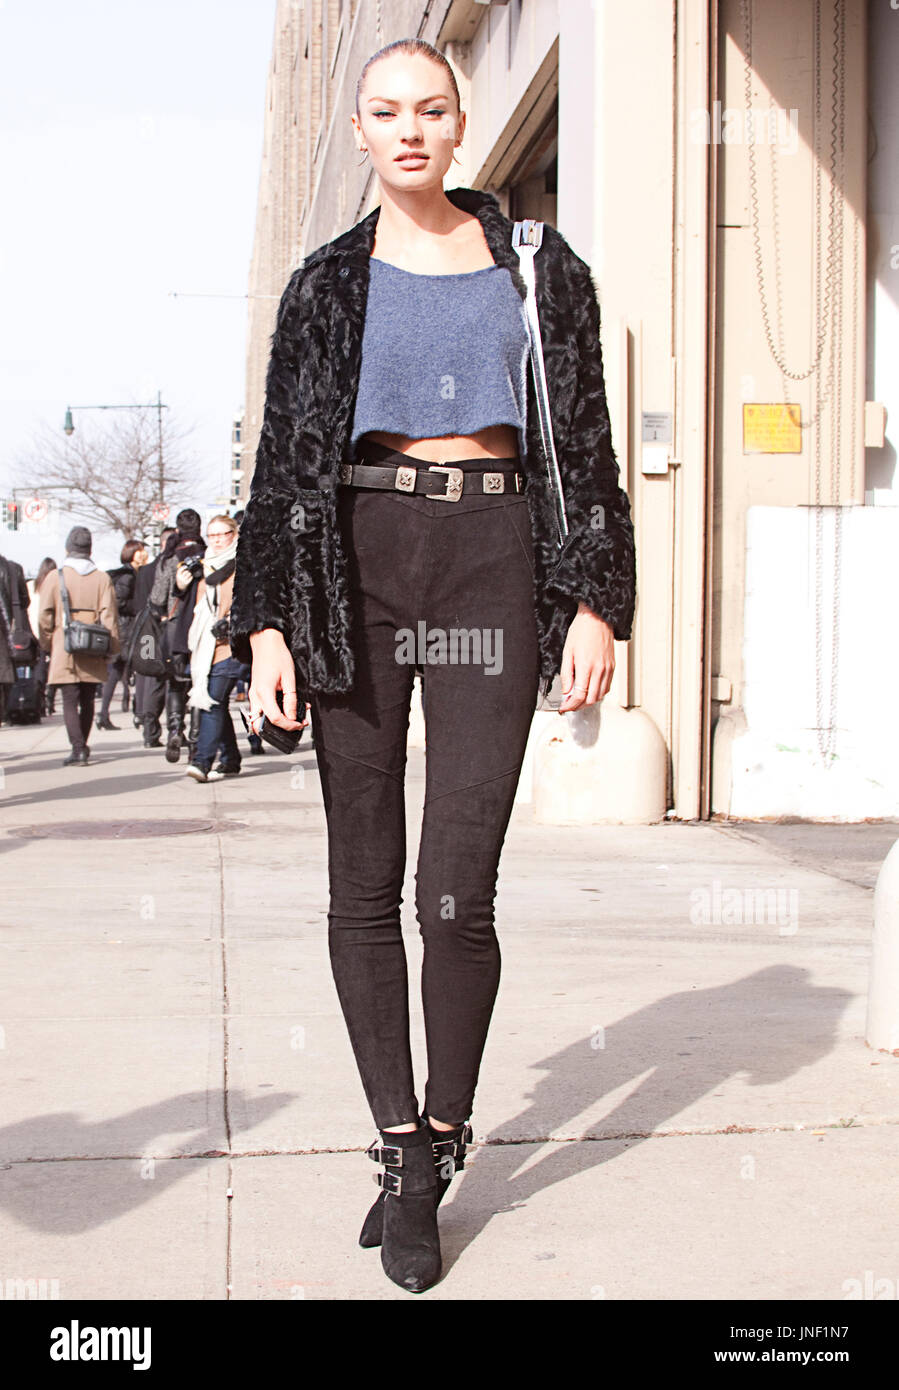 Pas de service, modèle : Candice Swanepoel street style au cours de la  Fashion Week de New York Photo Stock - Alamy